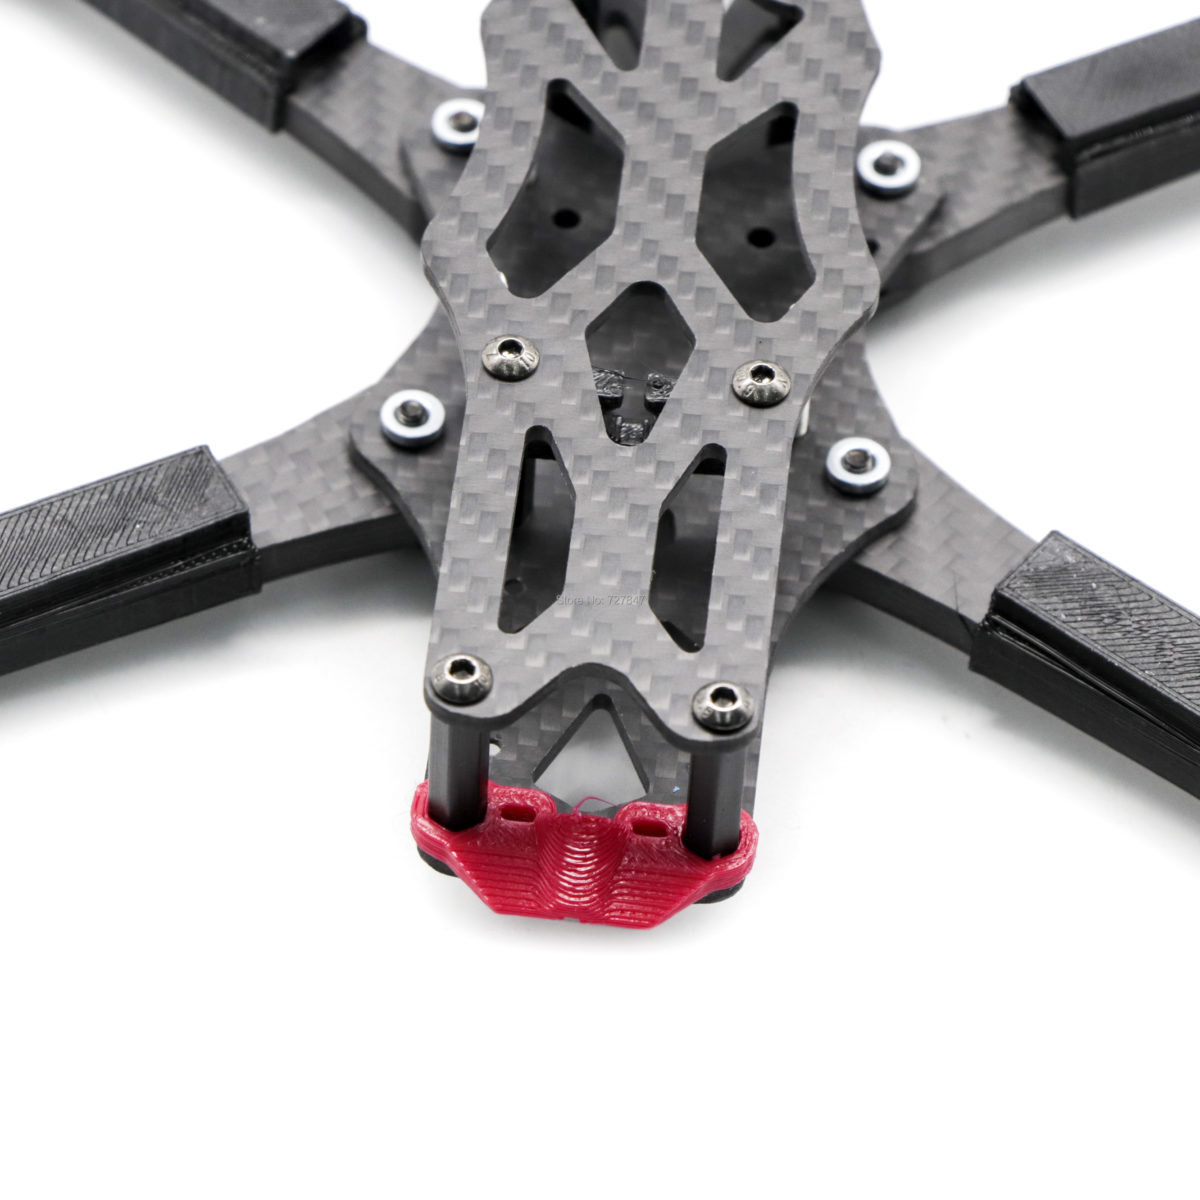 APEX in Carbon Fiber Frame Kit - FPV Racing Drone